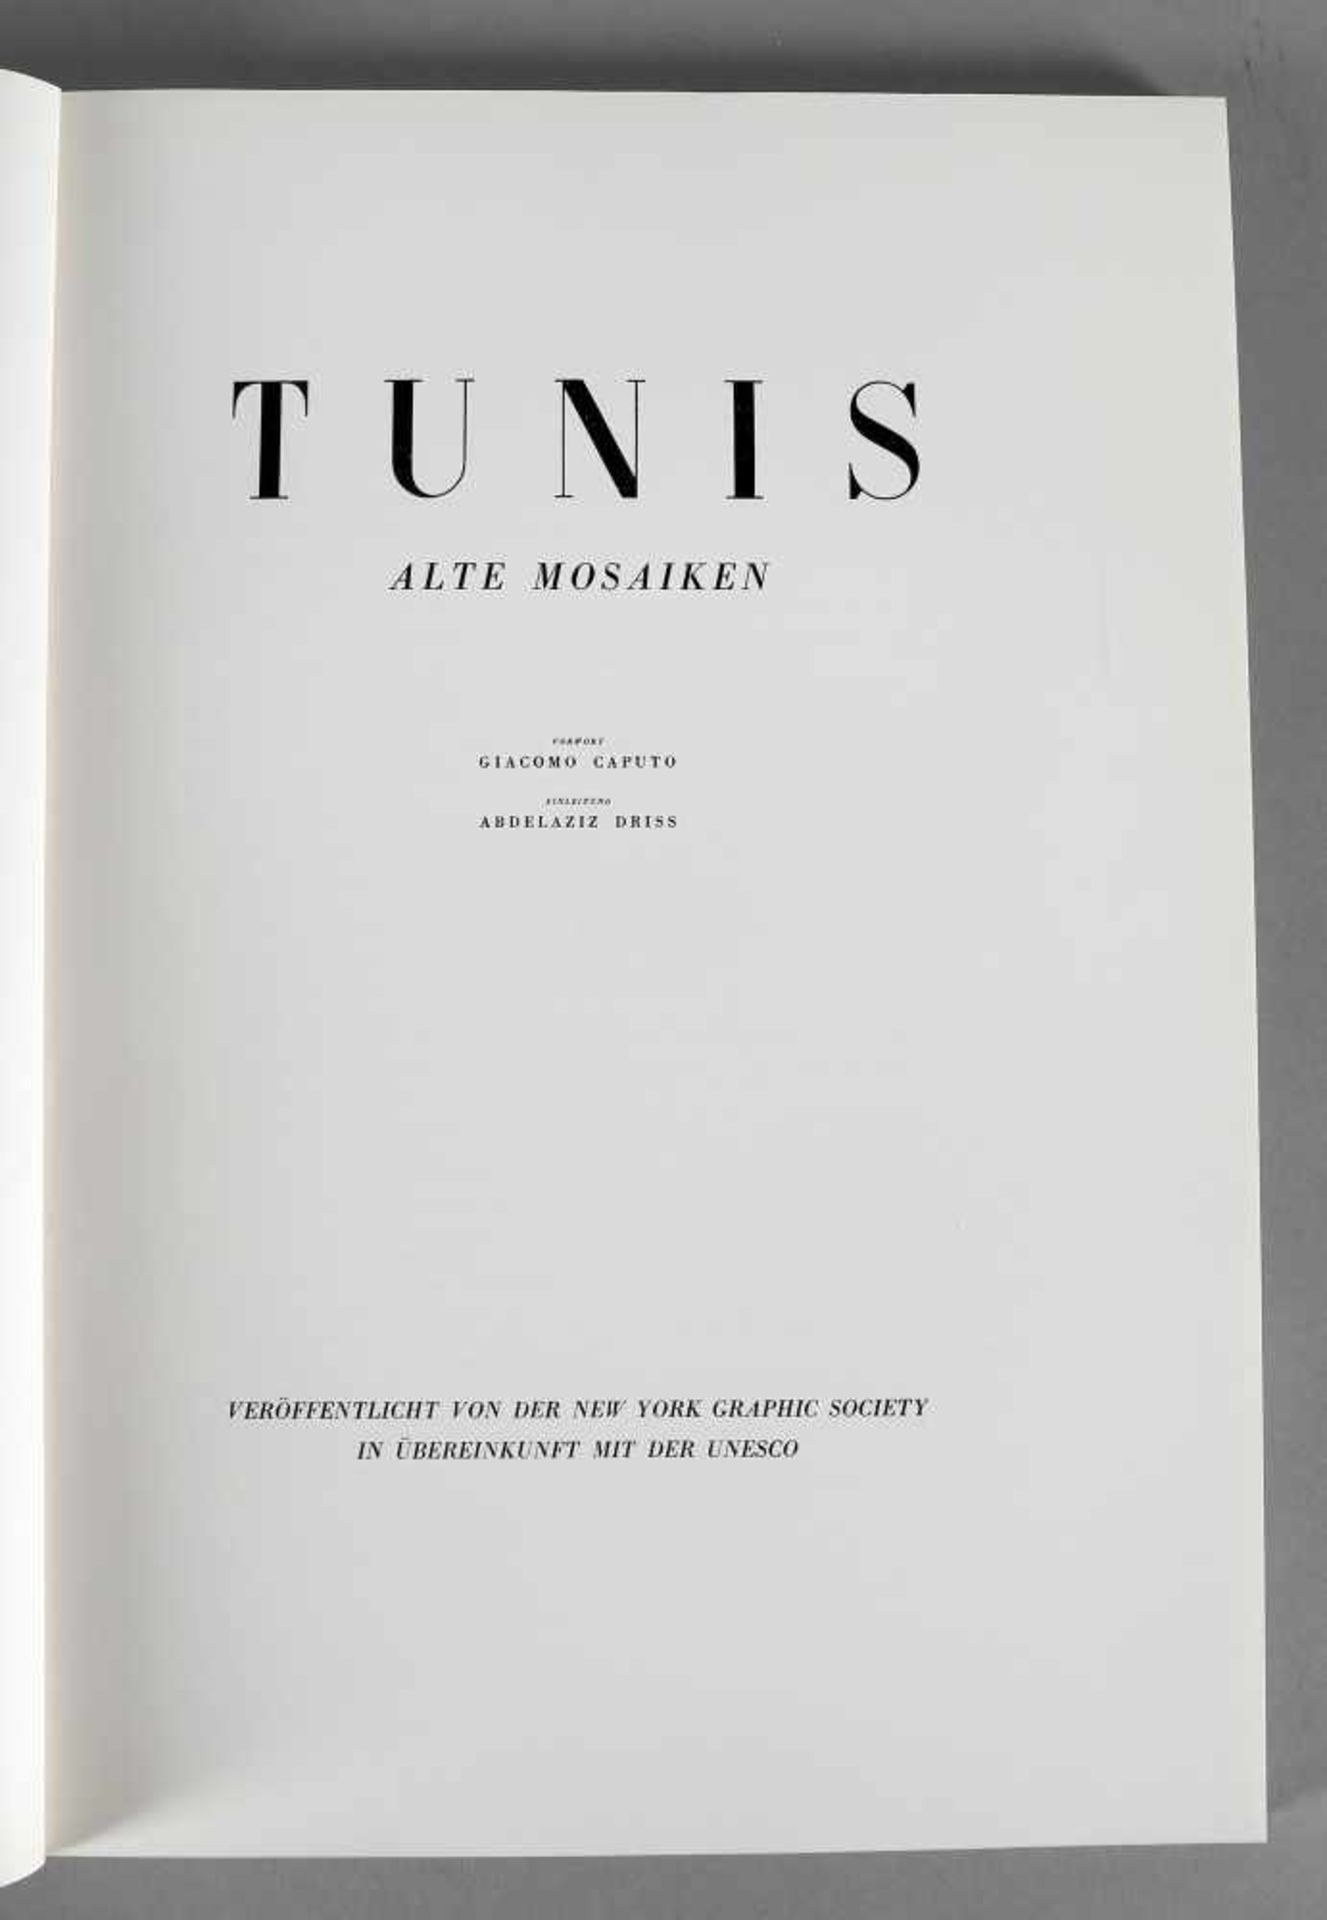 Tunis, Alte Mosaiken, UNESCO-Sammlung der Weltkunst, New York Graphic Society 1962